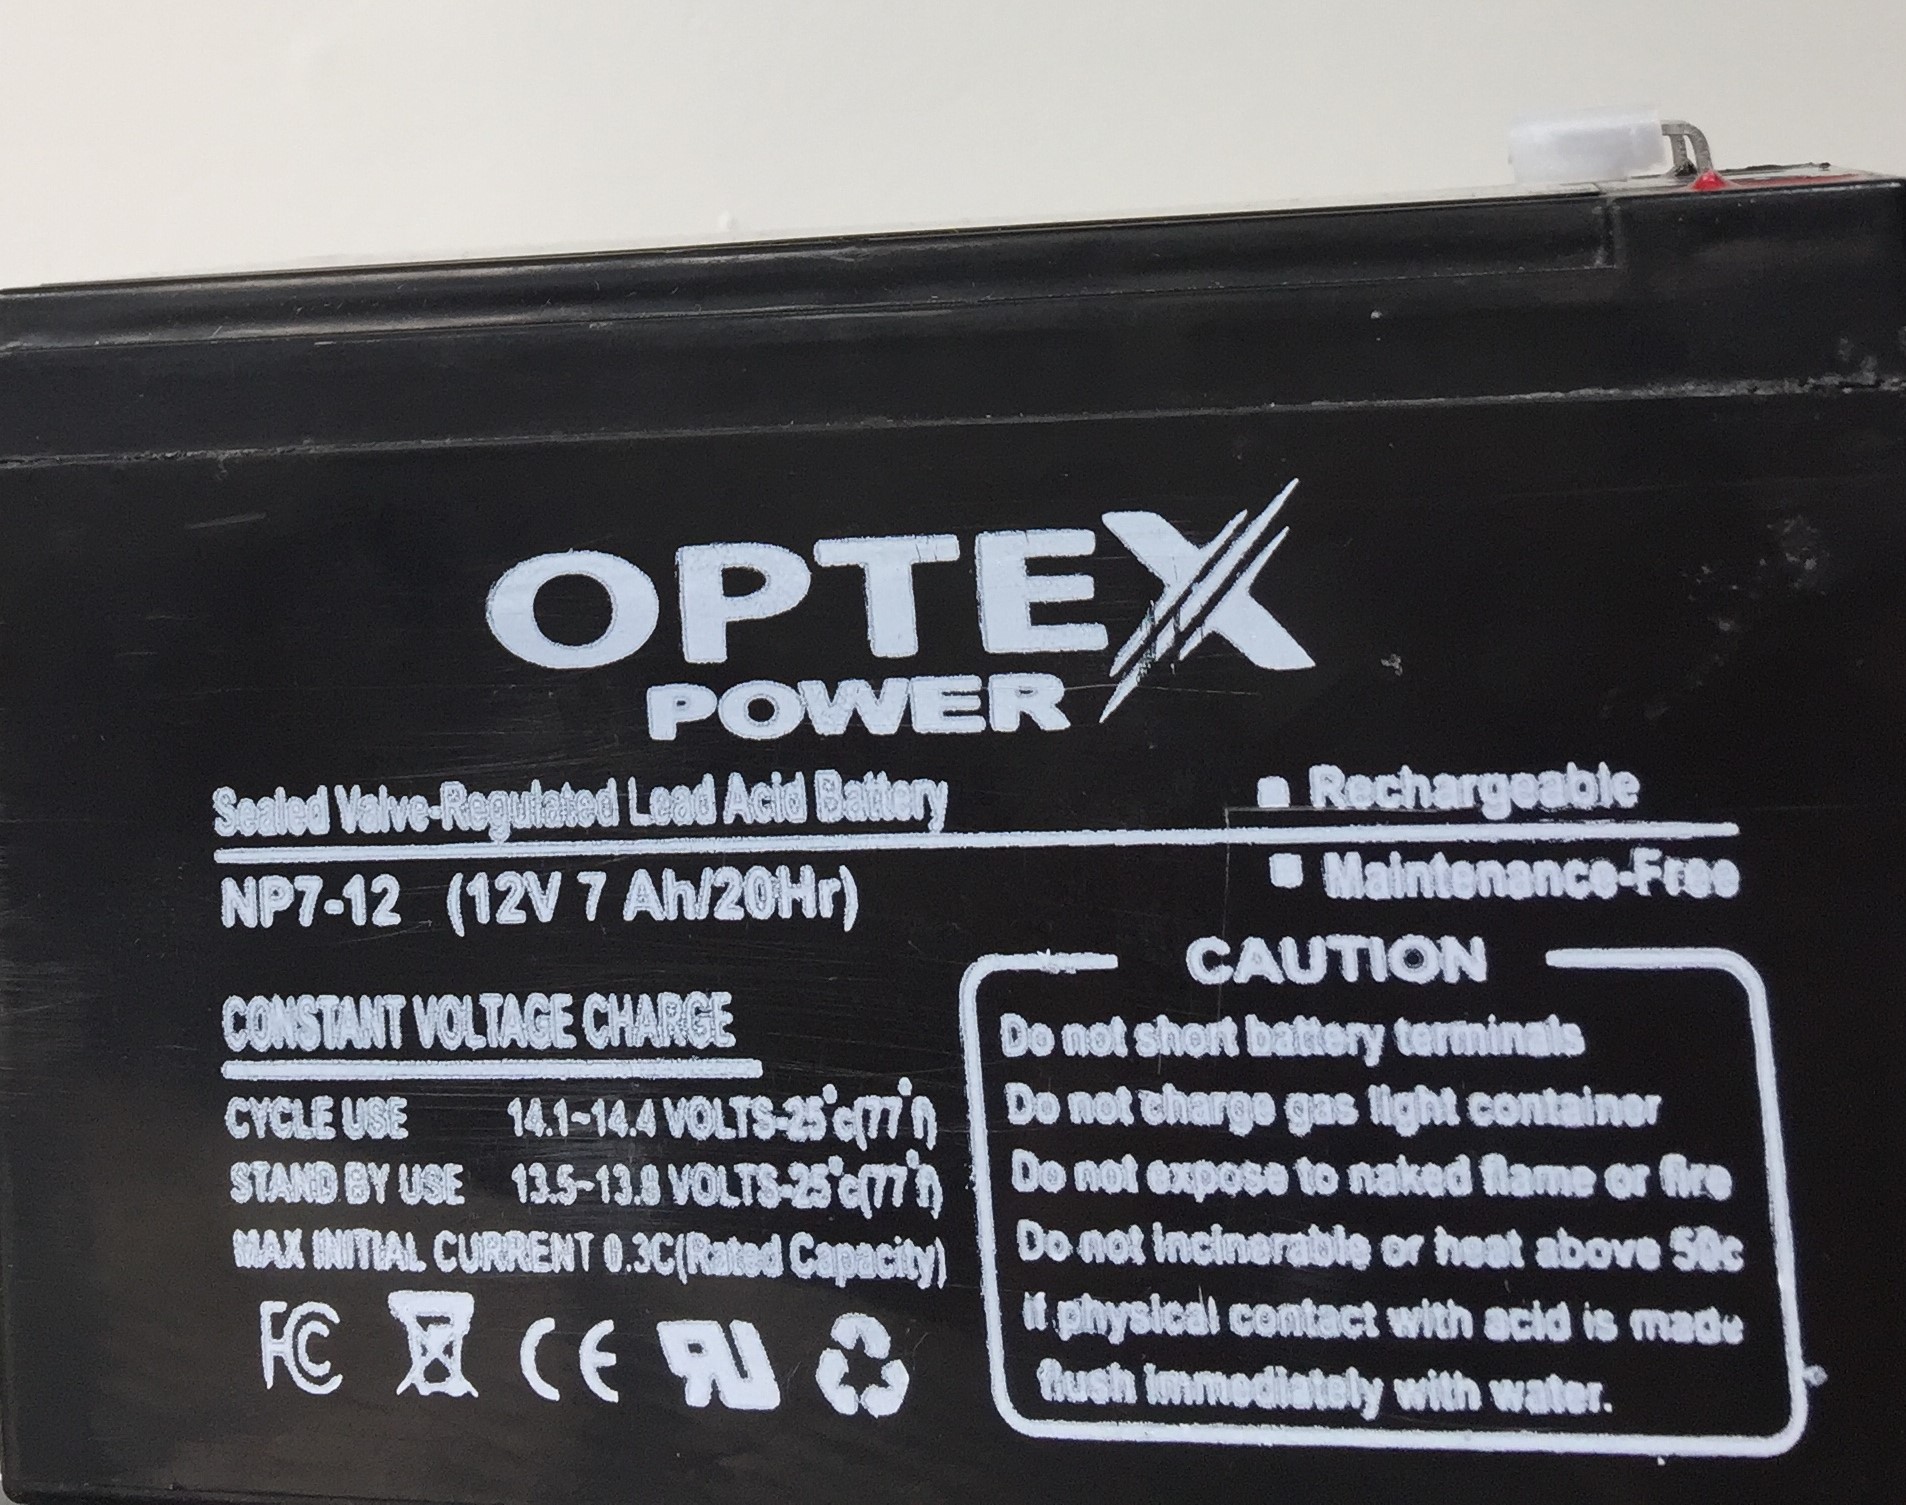 باتری 12 ولت/7 آمپر برند اپتکس پاور